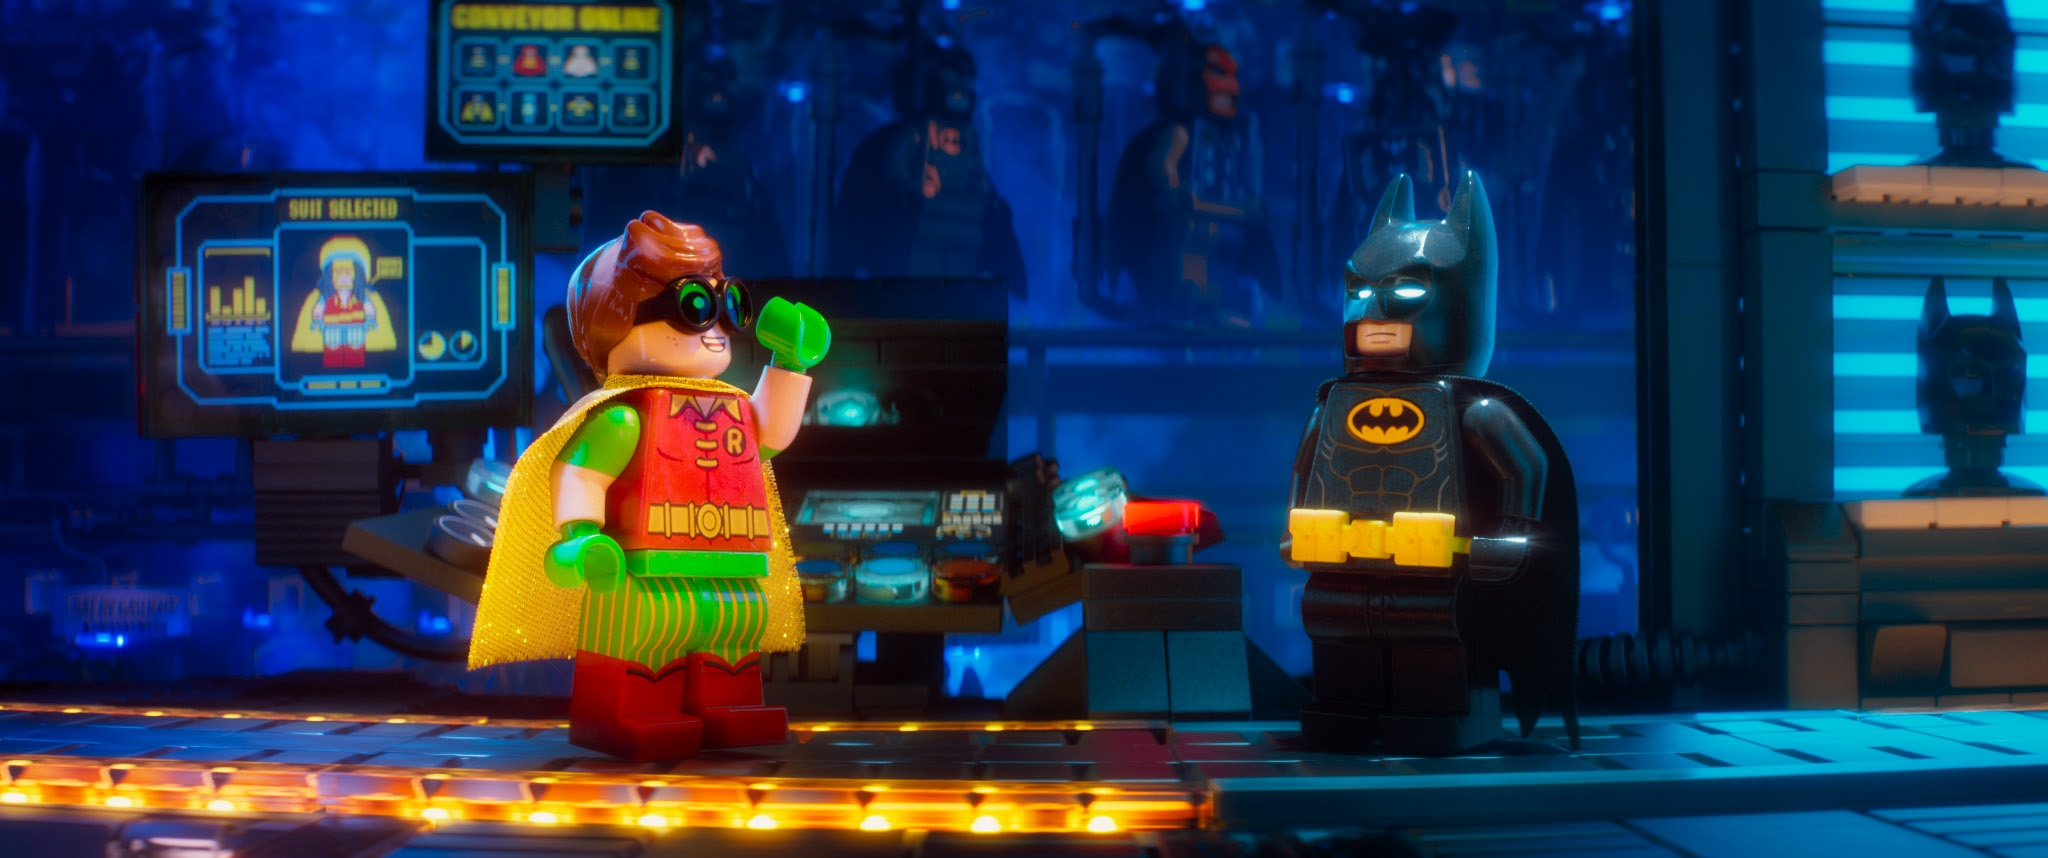 Image du film Lego Batman : le film 08dcc292-afa3-4f17-bda2-763a61a21b86